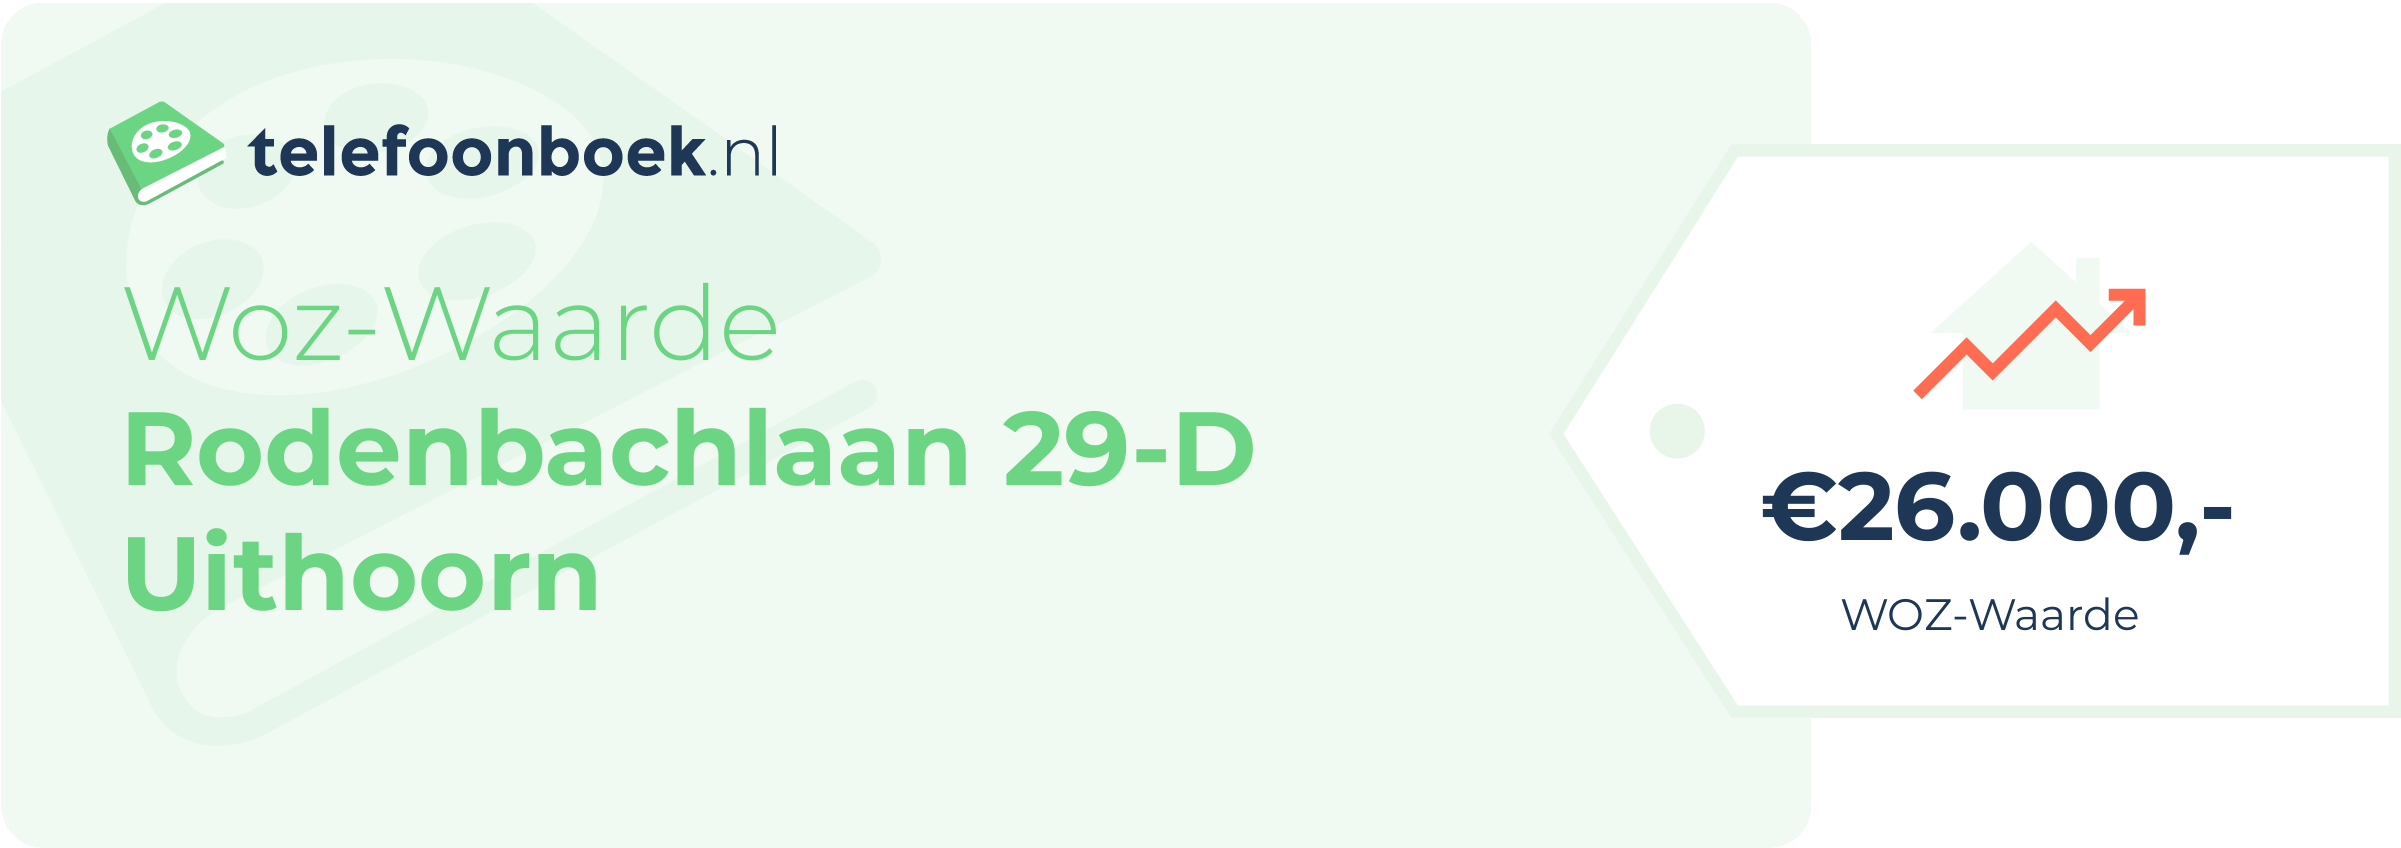 WOZ-waarde Rodenbachlaan 29-D Uithoorn